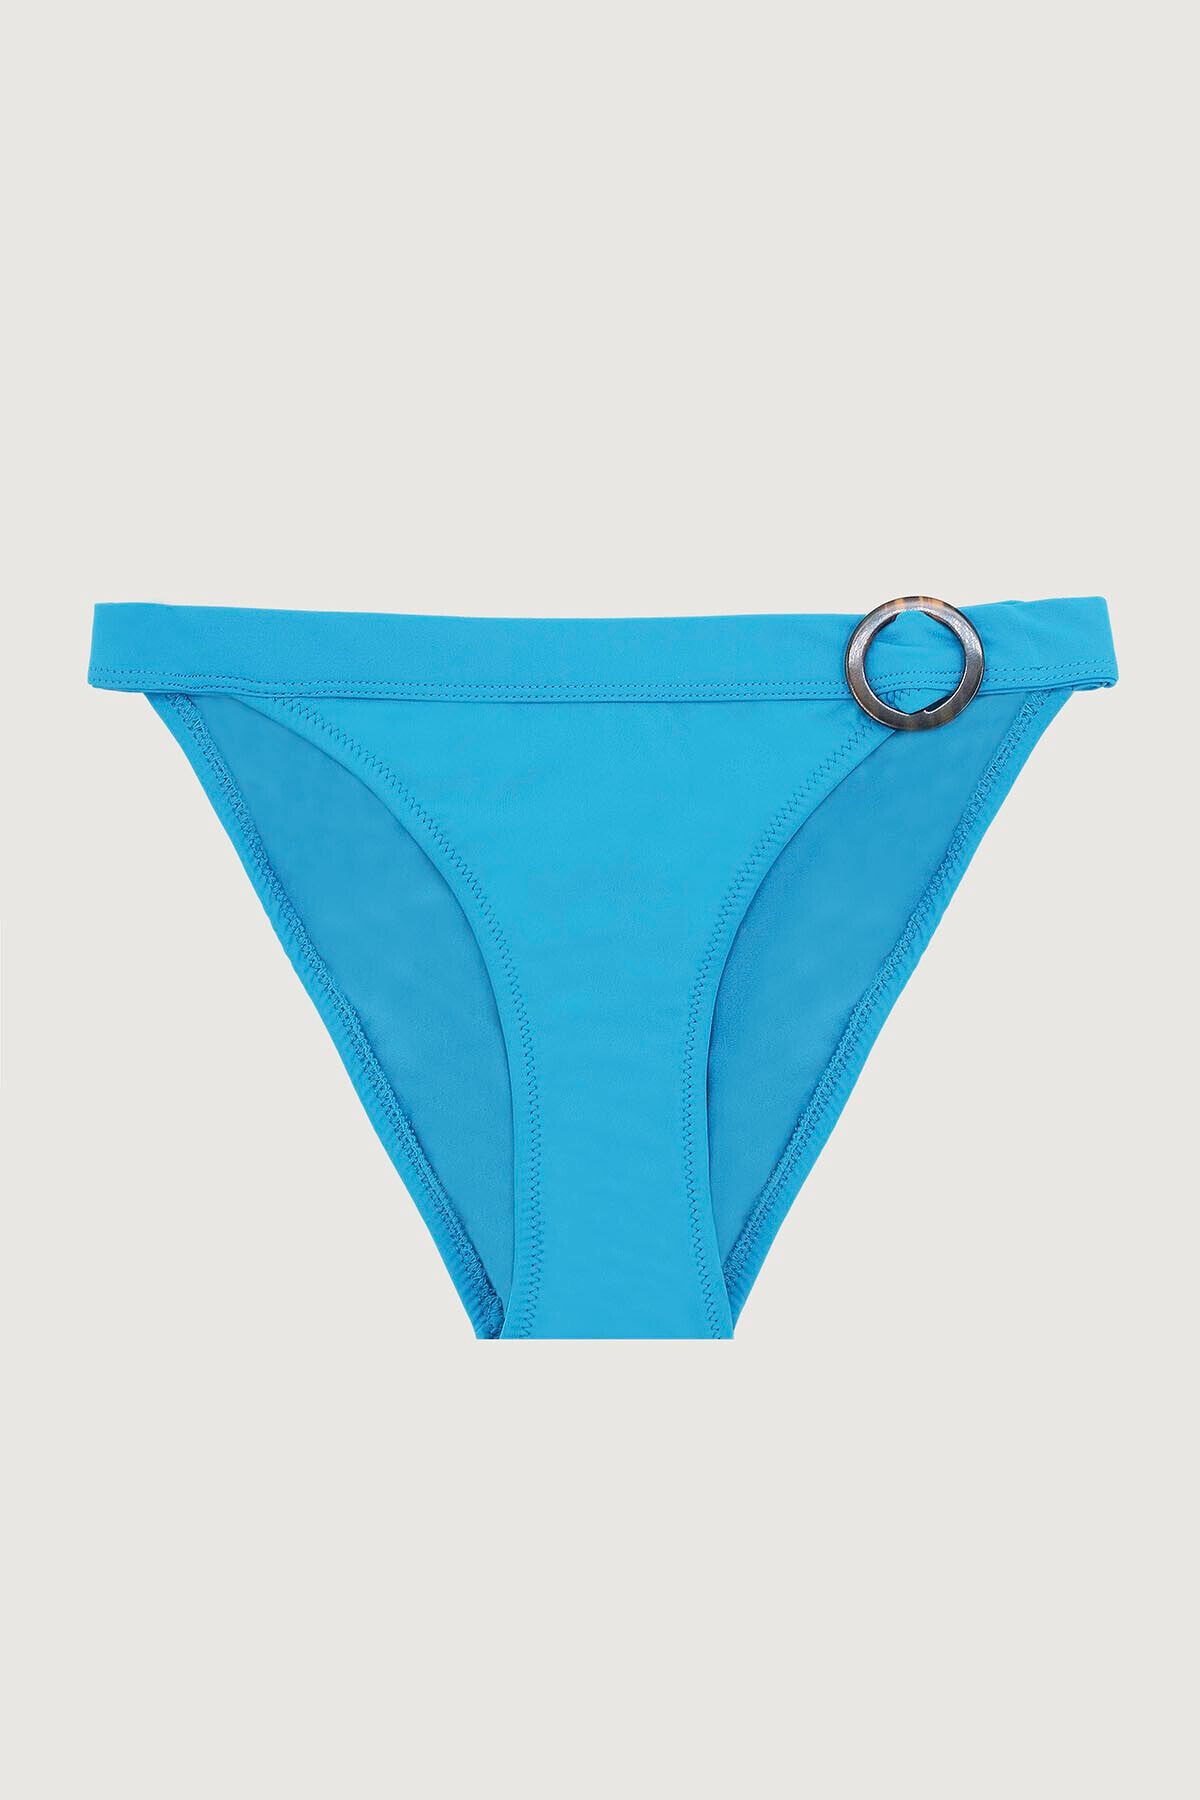 Loya Mavi Halka Detaylı Tek Alt Bikini